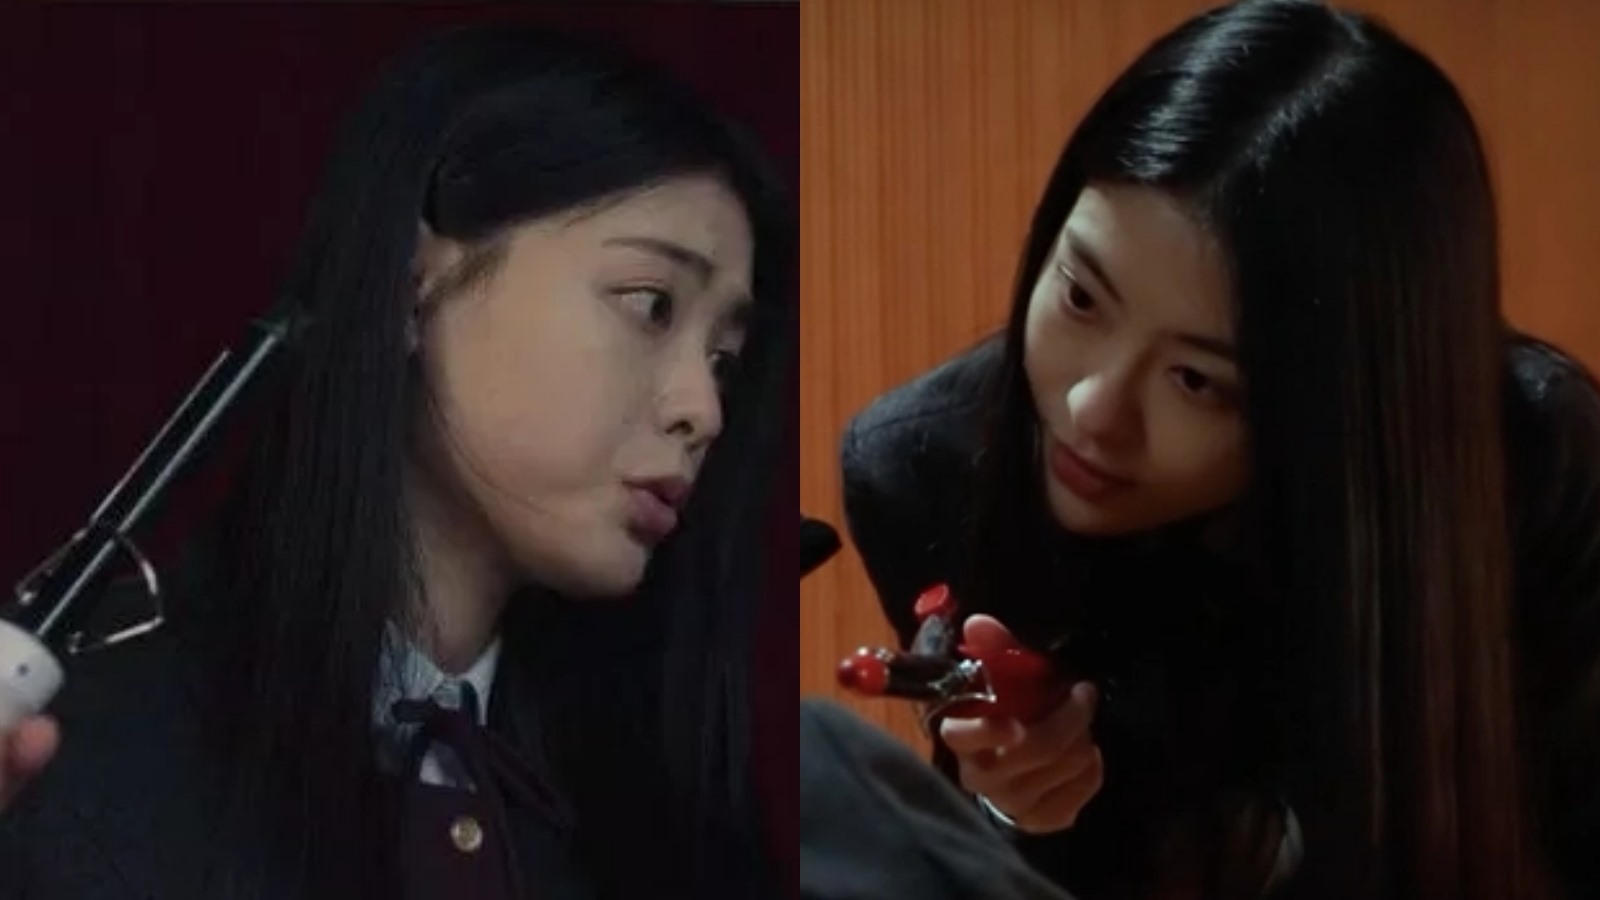 Trong “The Glory“, chiếc máy ép tóc trở thành nỗi ám ảnh của Moon Dong Eun. Hội bắt nạt của Park Yeon Jin dí máy lên tay nạn nhân và gọi đó là cách để thử độ nóng của máy ép tóc. Ảnh: Netflix